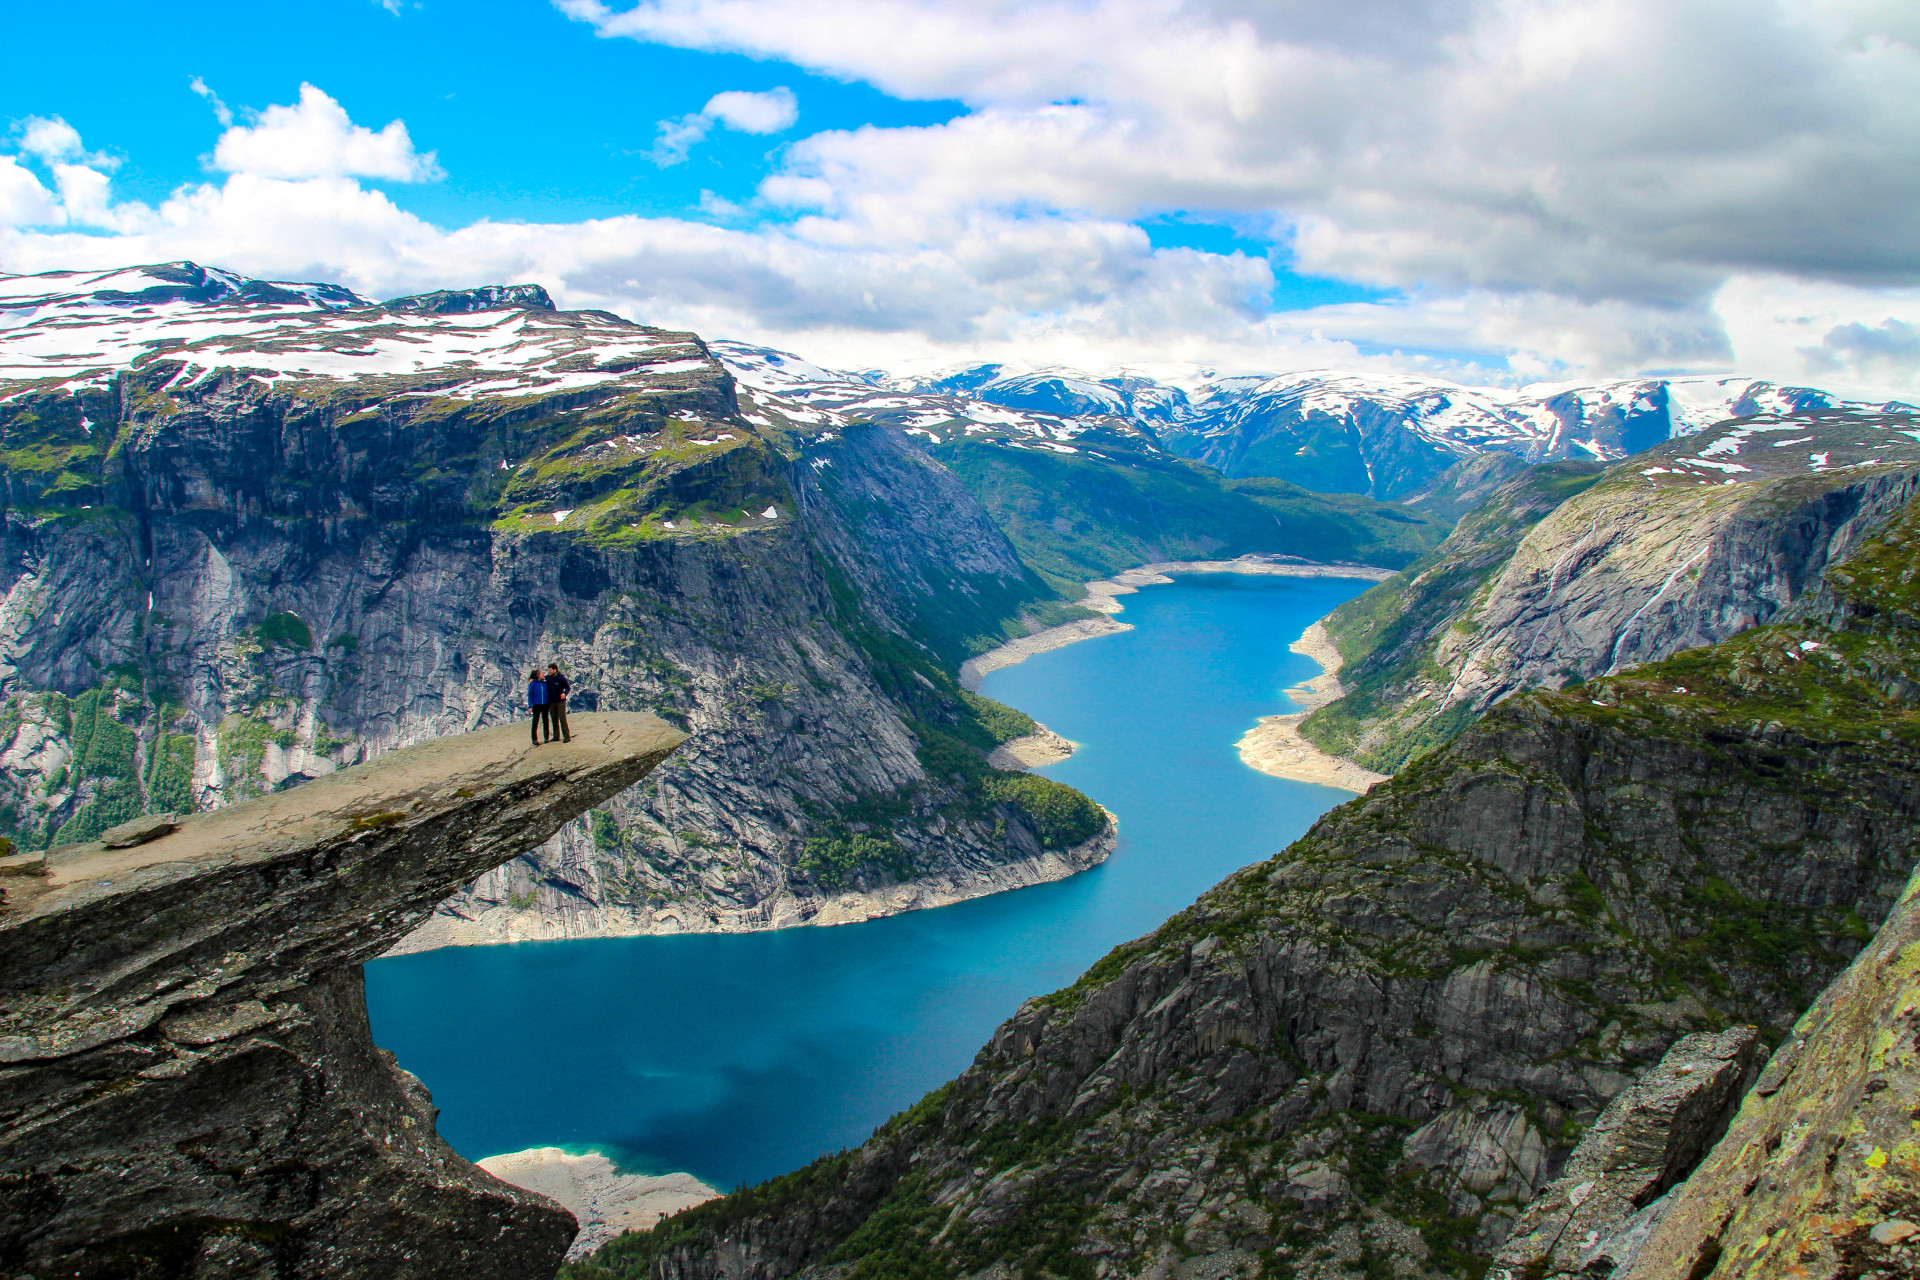 La majestueuse formation rocheuse, appelée Trolltunga, est l'une des plus grandes attractions touristiques de Norvège.<p><a href="https://www.msn.com/fr-fr/community/channel/vid-7xx8mnucu55yw63we9va2gwr7uihbxwc68fxqp25x6tg4ftibpra?cvid=94631541bc0f4f89bfd59158d696ad7e">Suivez-nous et accédez tous les jours à du contenu exclusif</a></p>